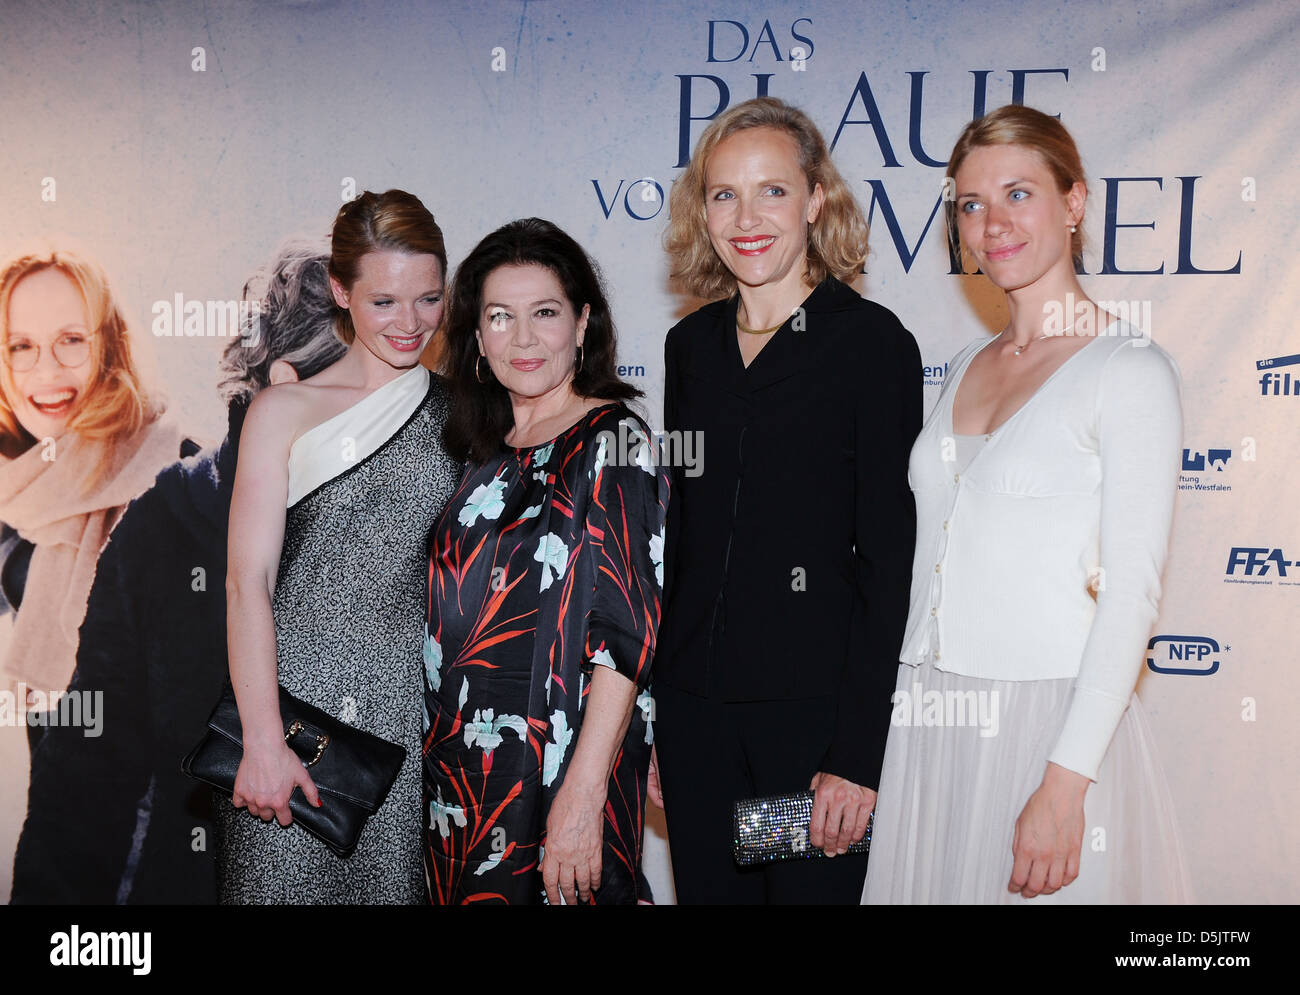 Karoline Herfurth, Hannelore Elsner, Juliane Koehler, Juta Vanaga der Berlin-Premiere von "Das Blaue Vom Himmel" Astor Stockfoto